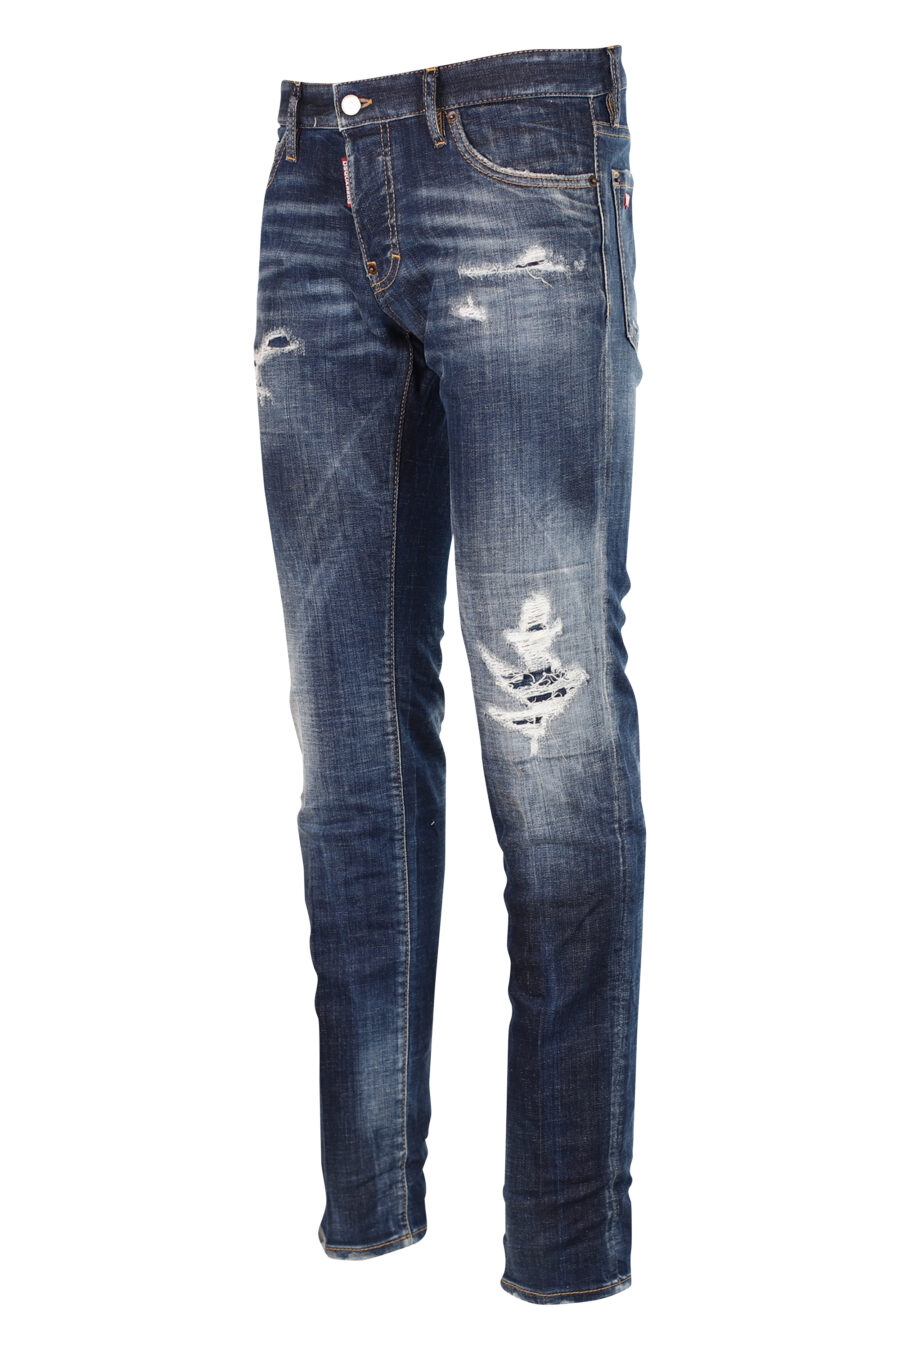 Pantalón vaquero "Slim jean" azul semi desgastado con rotos - 8052134942789